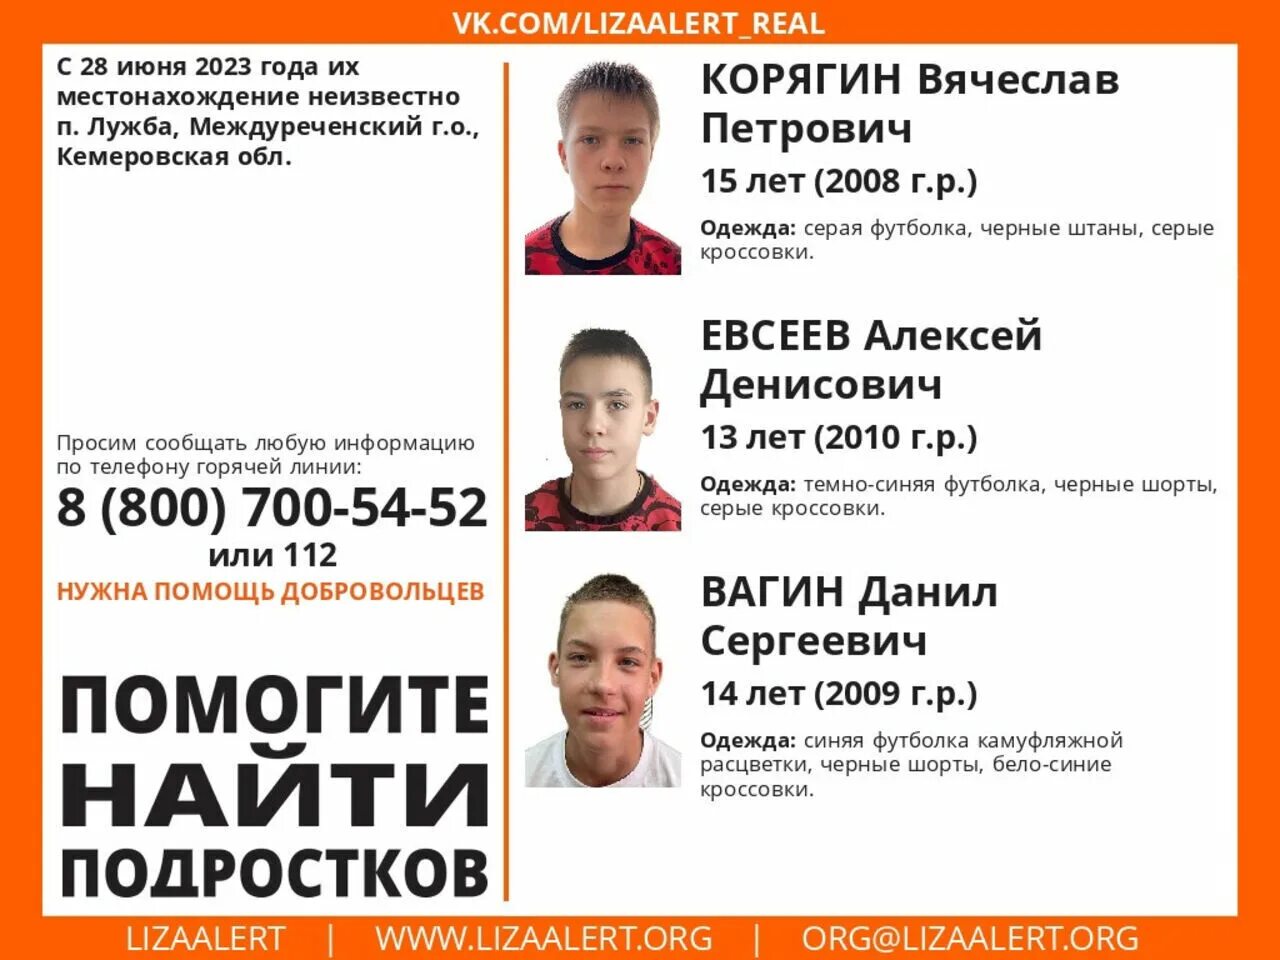 Пропал подросток. Пропавшие дети в лизаашерт. Пропажи детей в России 2023. Пропавшие дети в 2023 году.